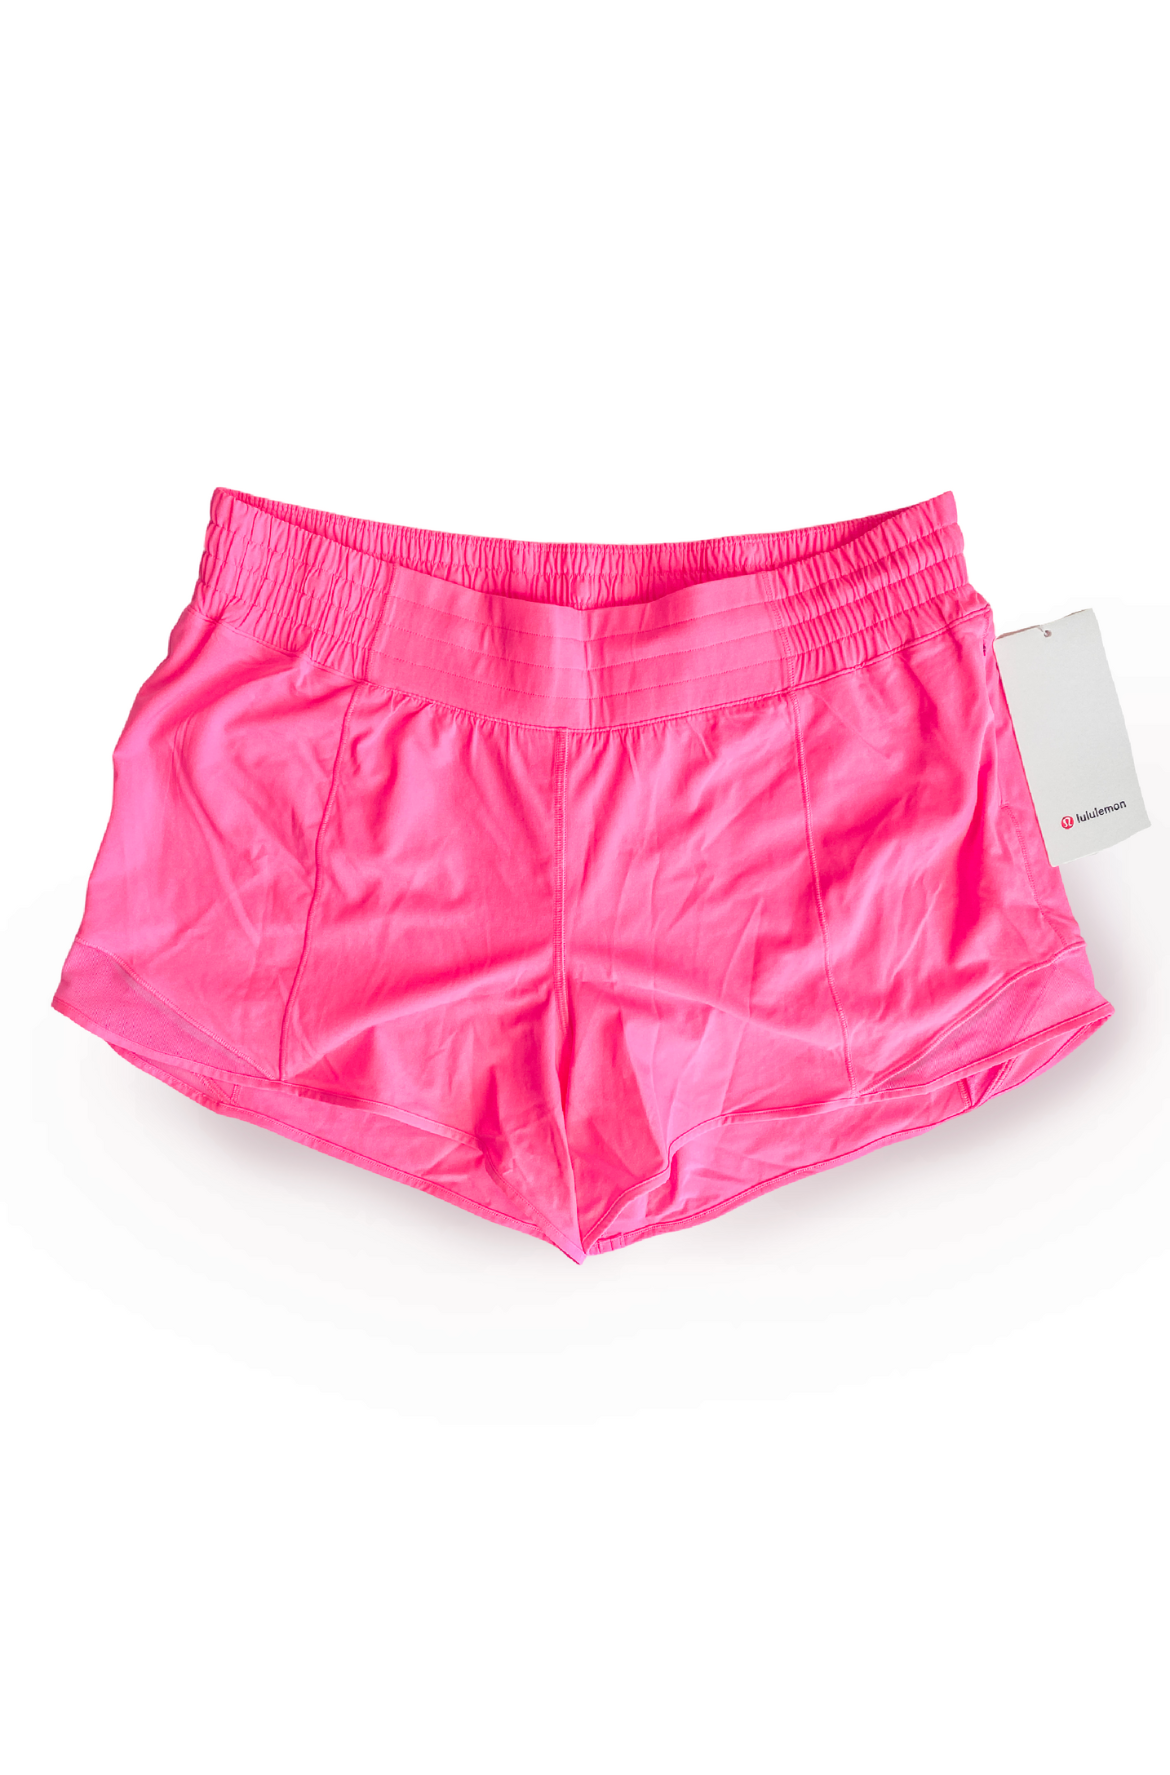 lululemon - hotty hot shorts on Designer Wardrobe